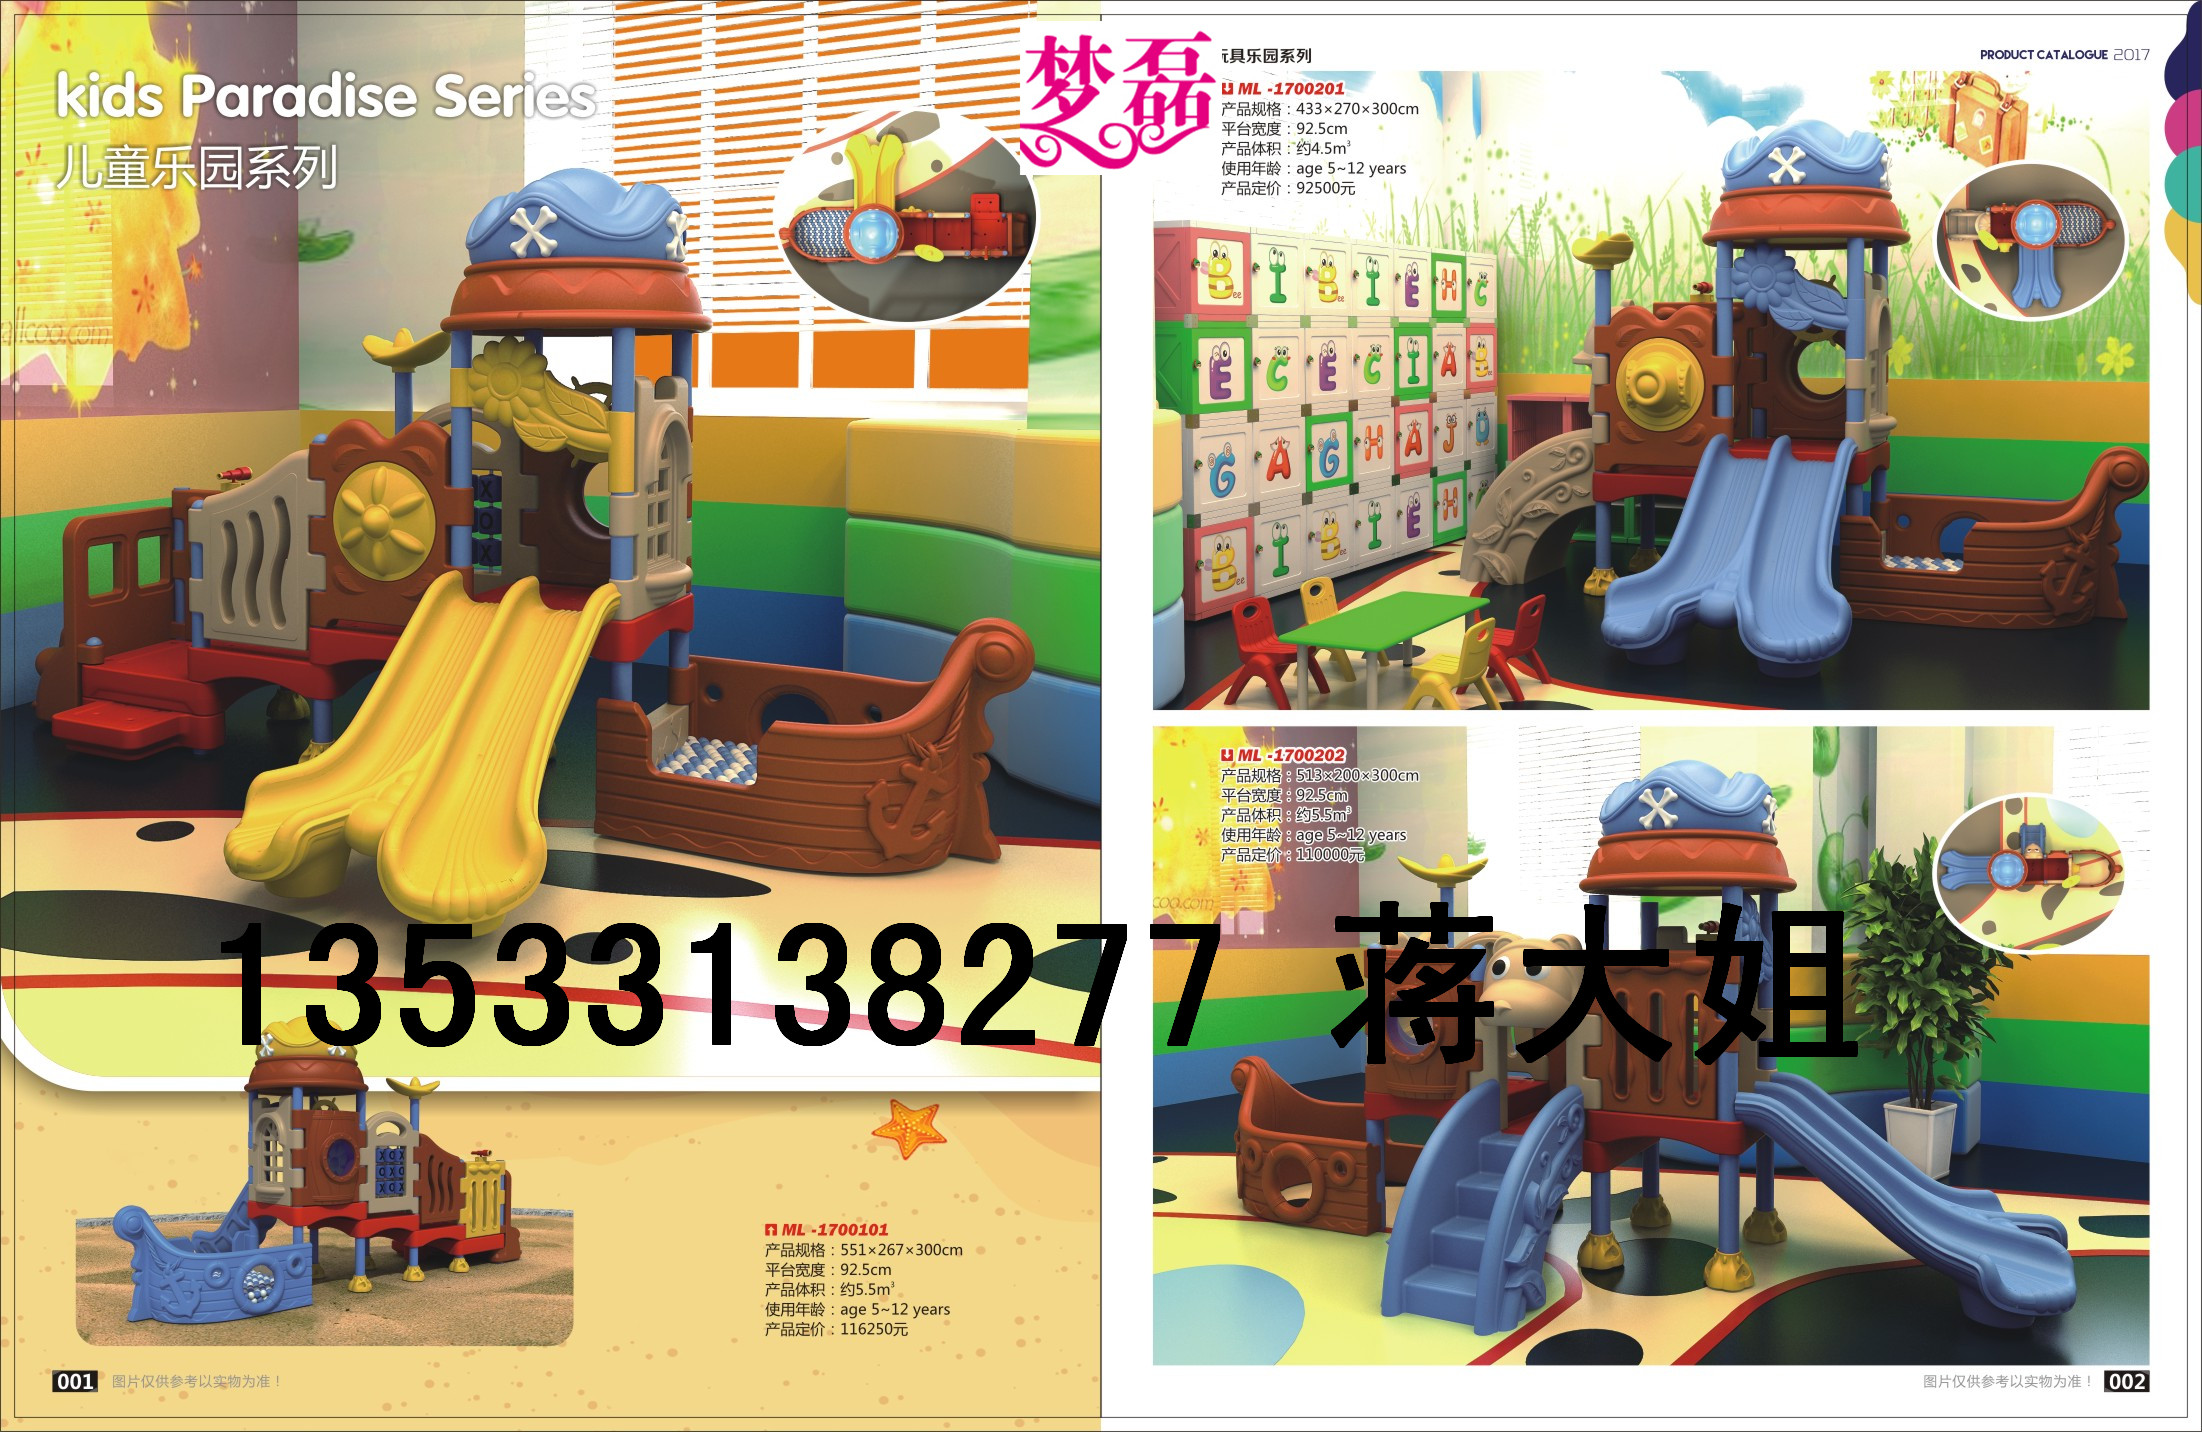 广州室内淘气堡 广州室内游乐设备 广州儿童淘气堡 广州小型淘气堡 淘气堡图片